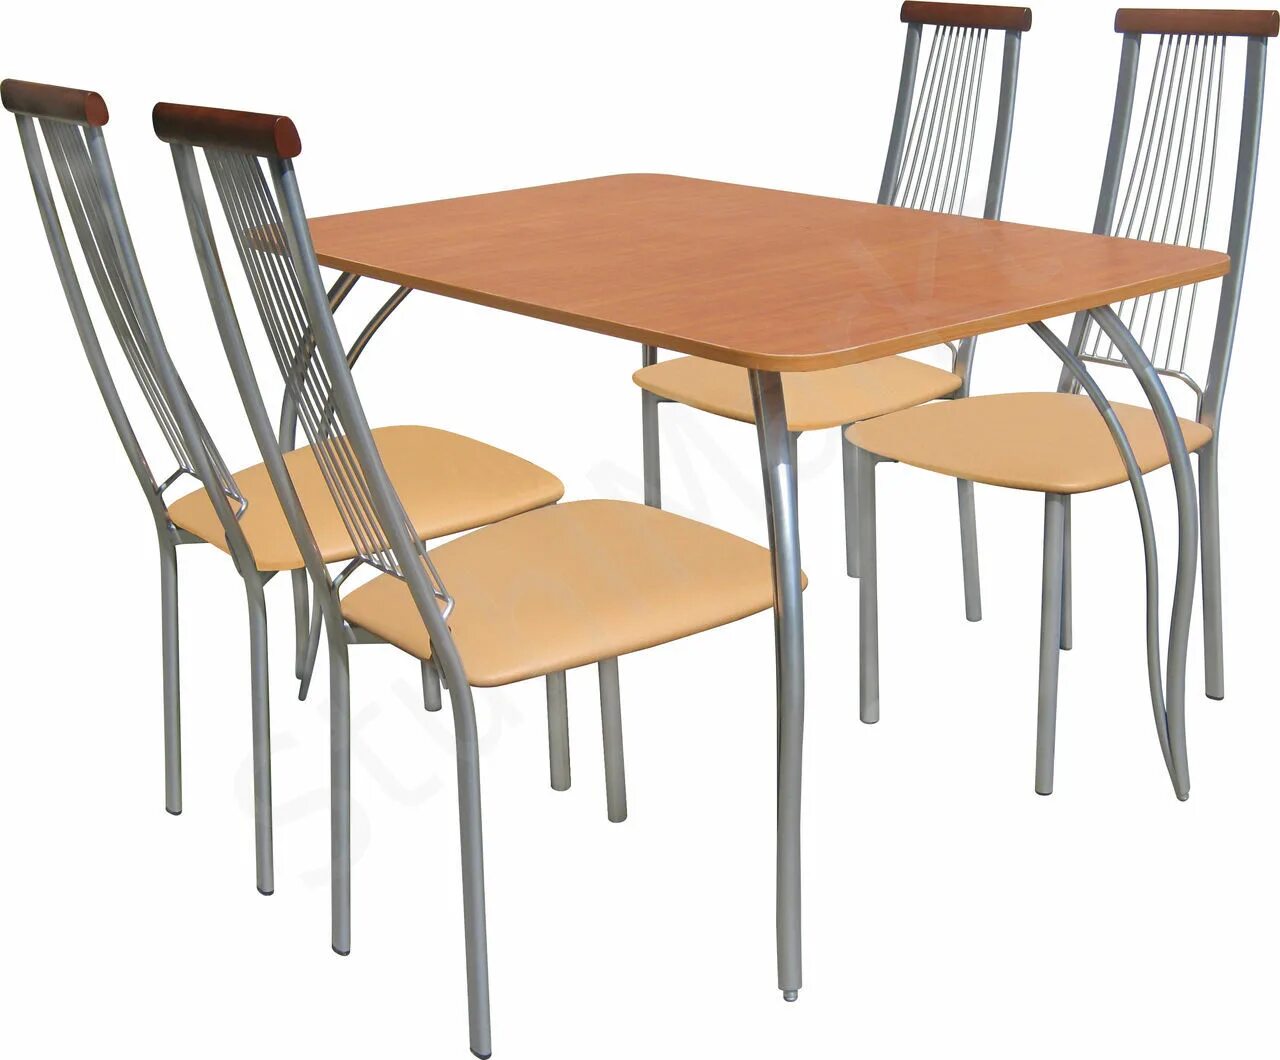 Столы стулья от производителя недорого. Стол м141. Обеденная группа "стандарт-4", стол м141 и 4 стула м54-01. Обеденный комплект "стол Лион ПМ+стулья Кармен".